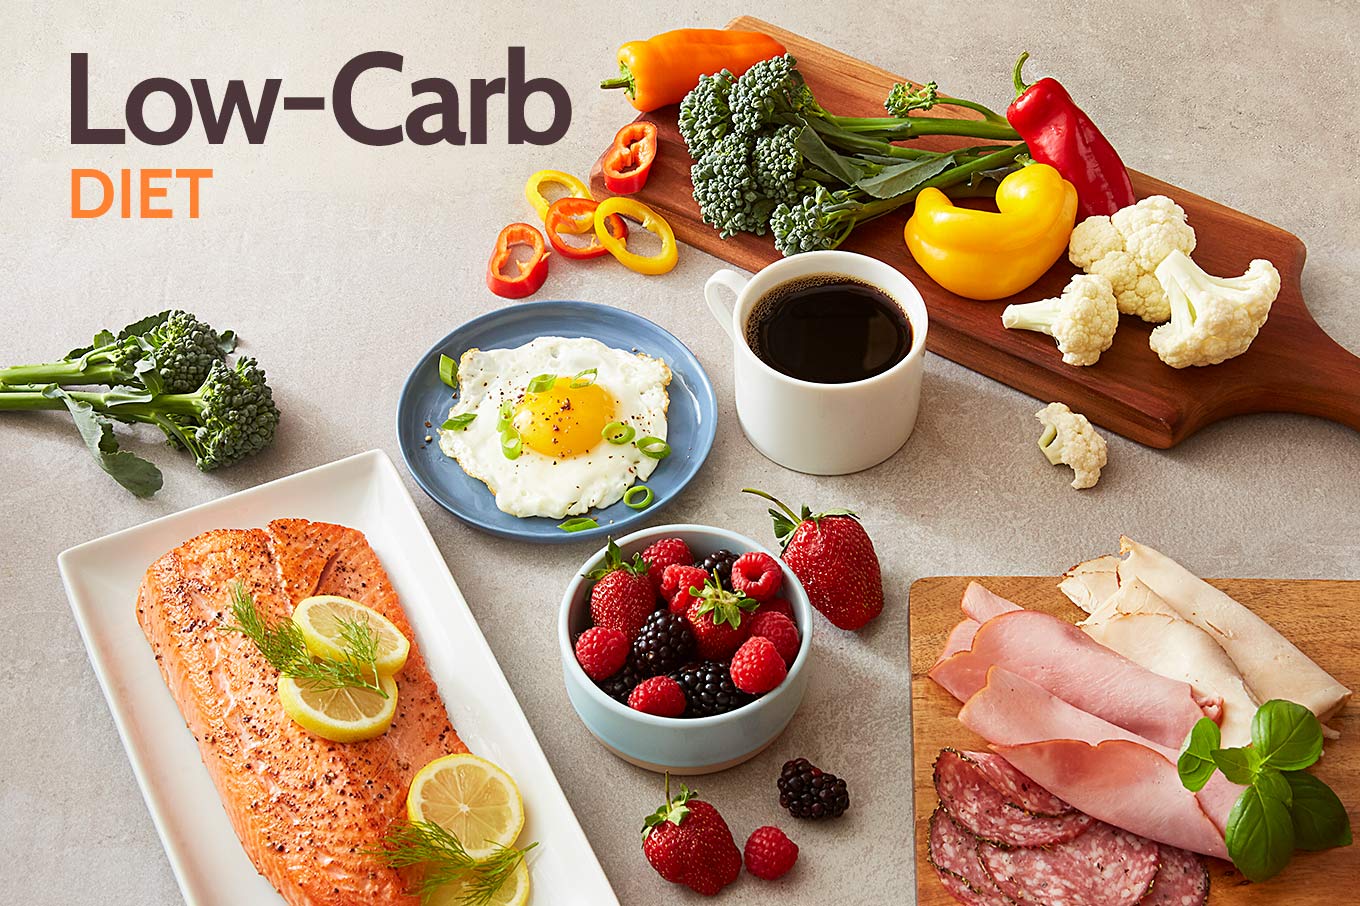 low carb là gì, ăn low carb là gì, chế độ low carb là gì, chế độ ăn kiêng low carb là gì, giảm cân low carb là gì, thực đơn low carb là gì, chế độ giảm cân low carb là gì, ăn kiêng low carb là gì, phương pháp low carb là gì